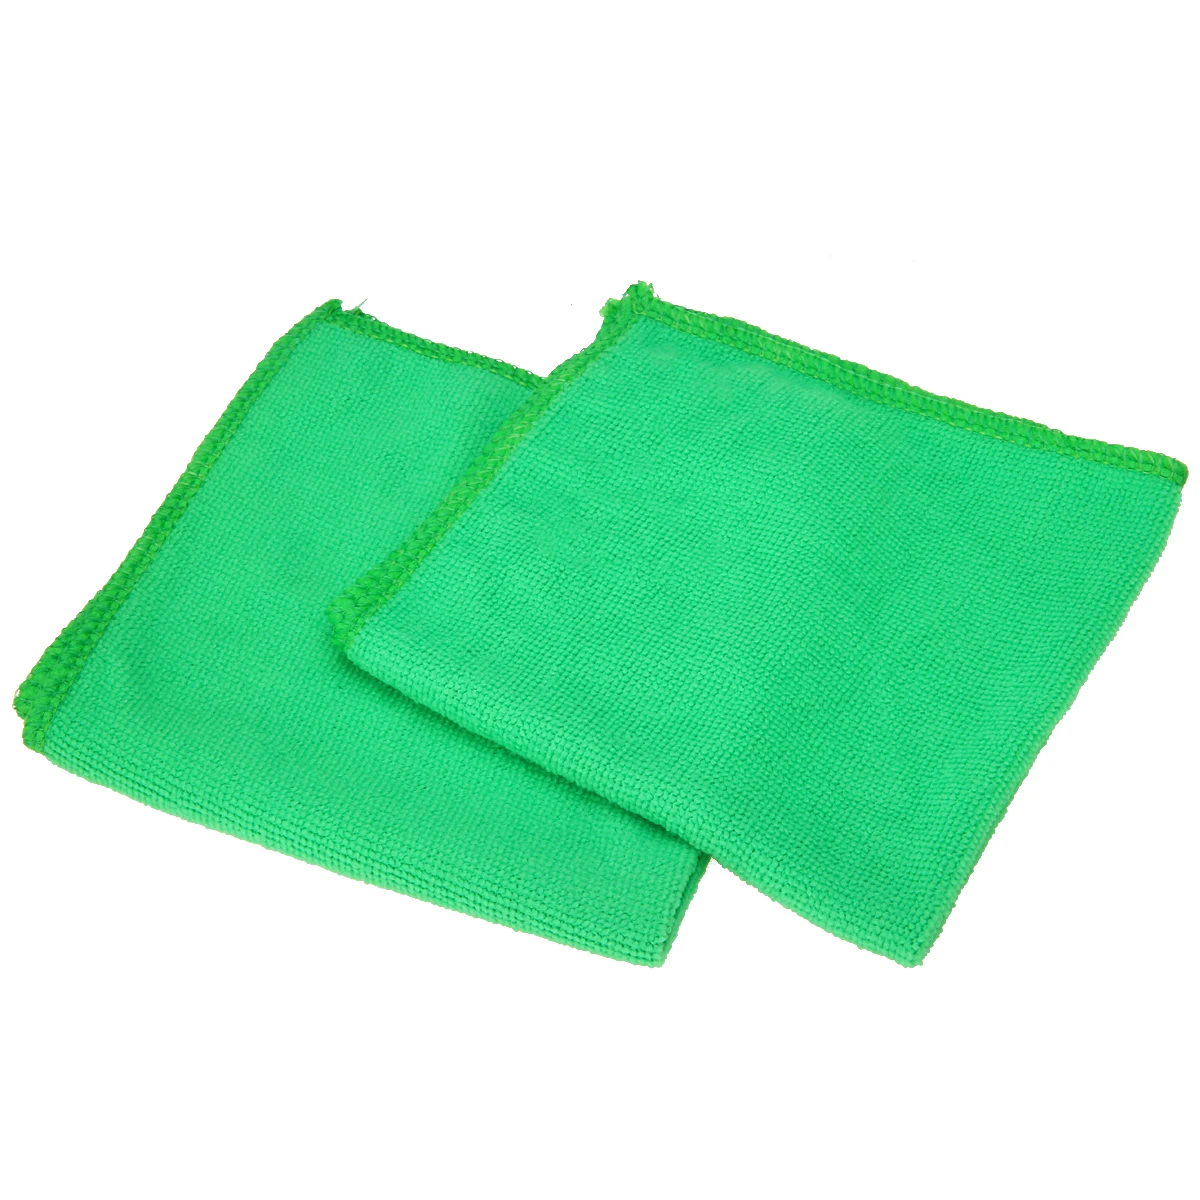 Mayitr 10 шт. микрофибра мойте чистые полотенца чистящие салфетки для мебели автомобиля Чистящая тряпка мягкие ткани 30x30 см зеленый